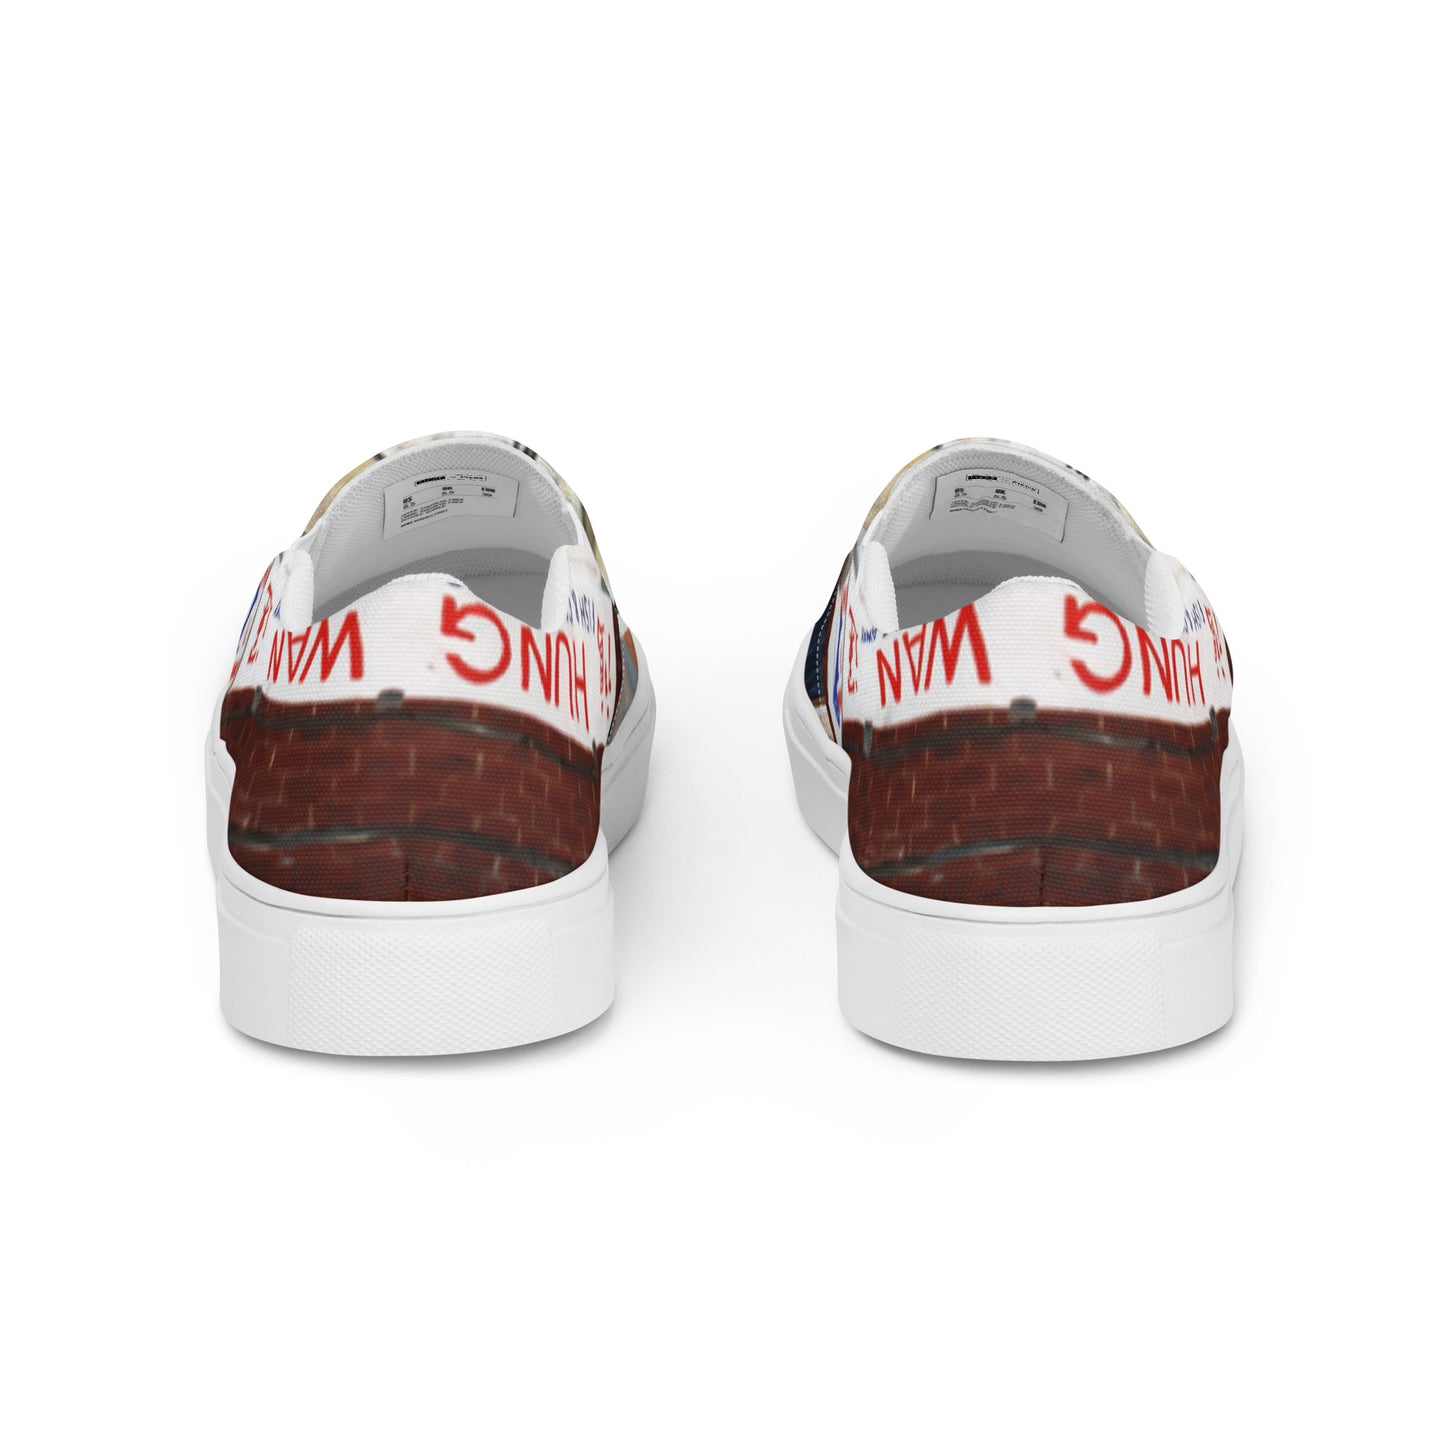 Chippy Tea - Men’s slip-on canvas shoes